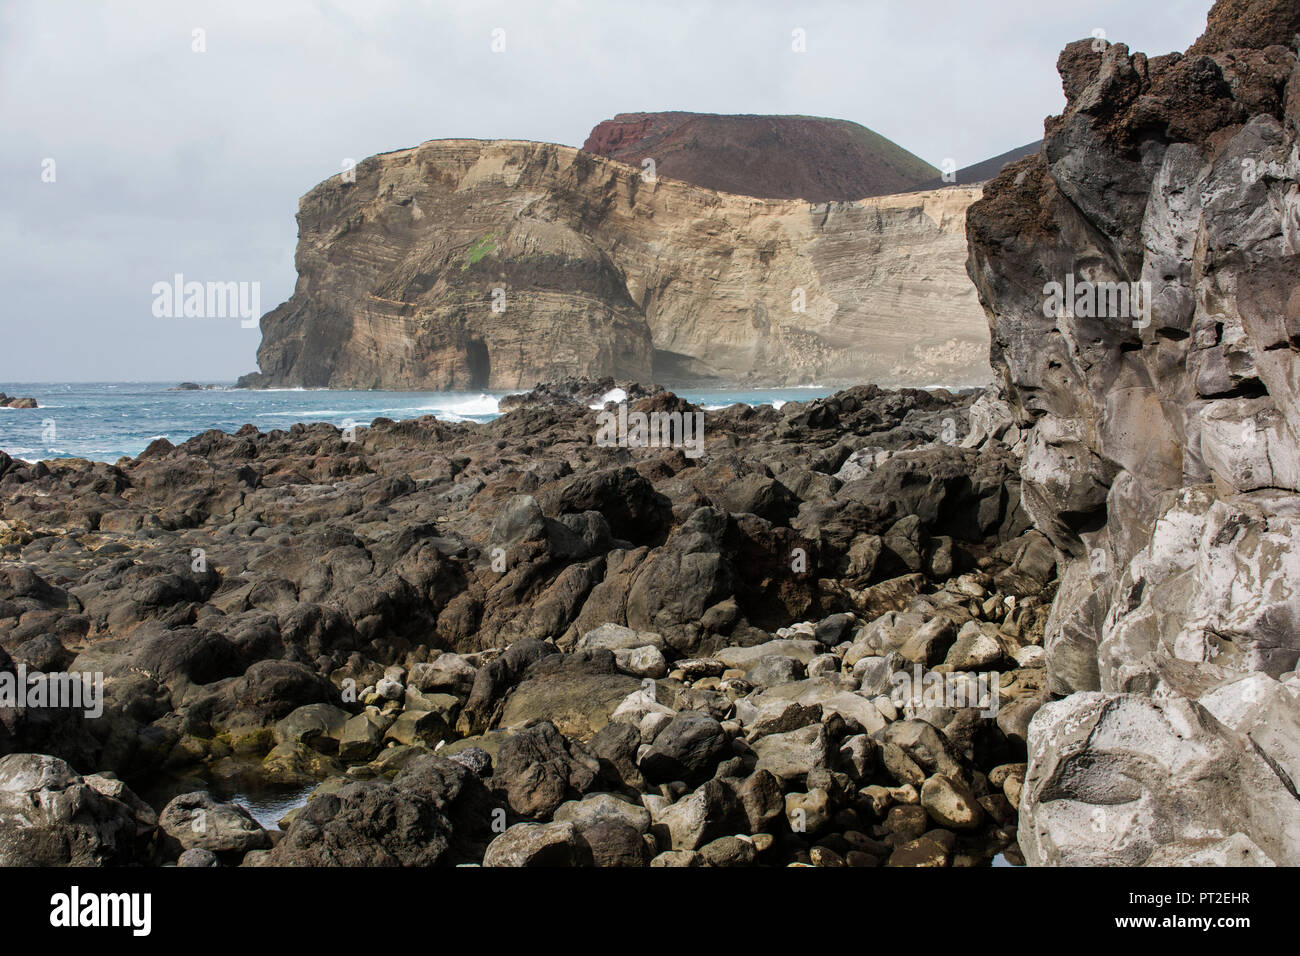 Volcanic coastal landscape of the Ponta dos Capelinhos Stock Photo